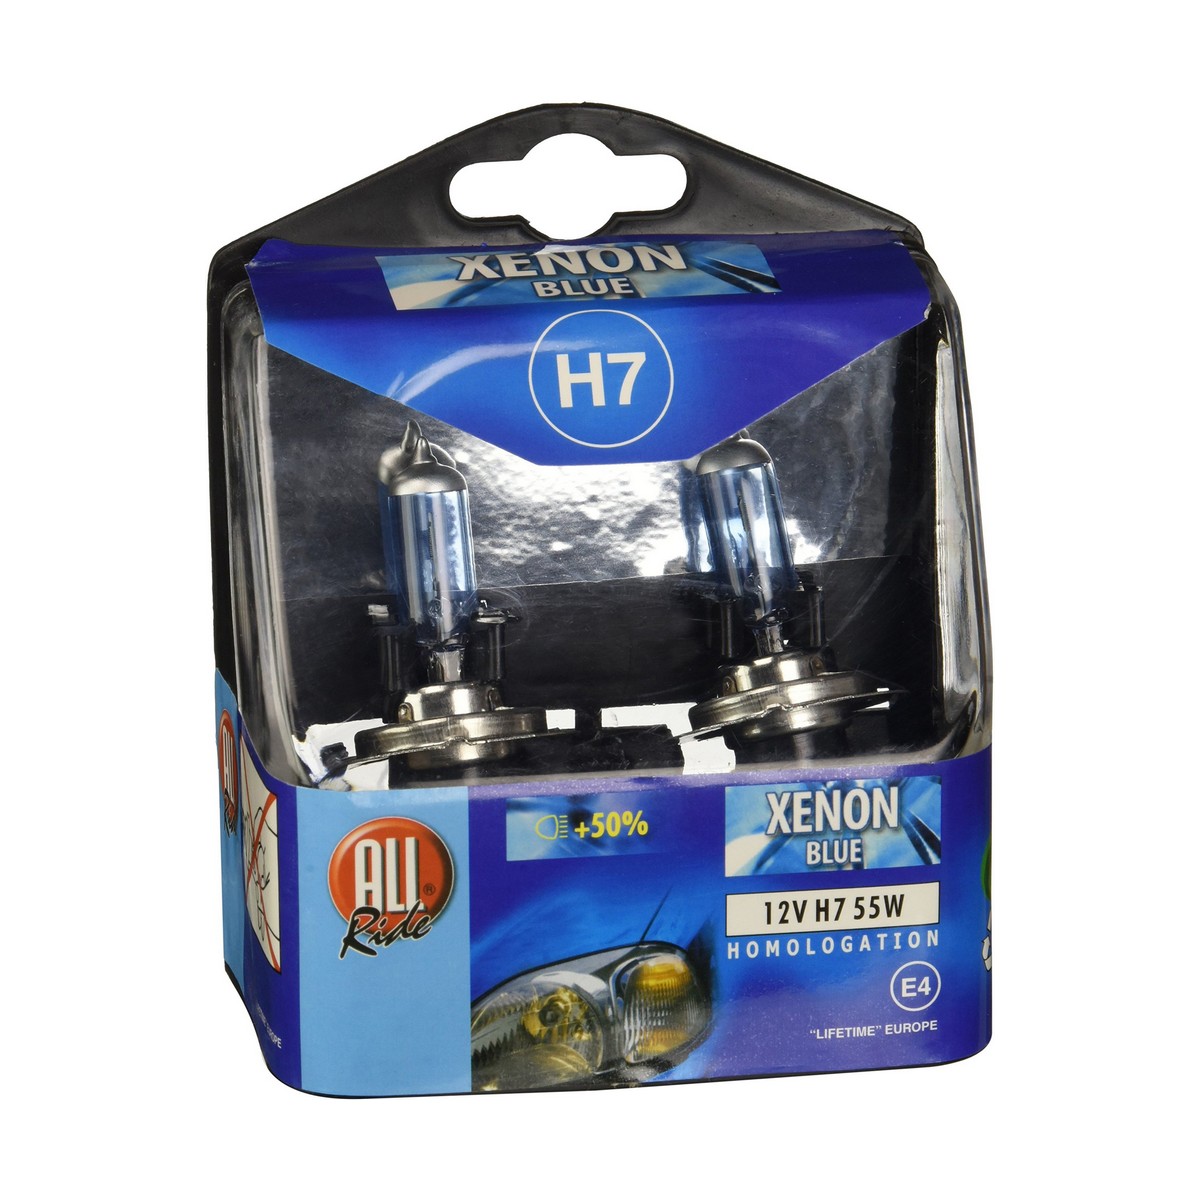 Osta tuote Hehkulamppu Dunlop H7 Xenon 2 osaa verkkokaupastamme Korhone: Urheilu & Vapaa-aika 20% alennuksella koodilla VIIKONLOPPU